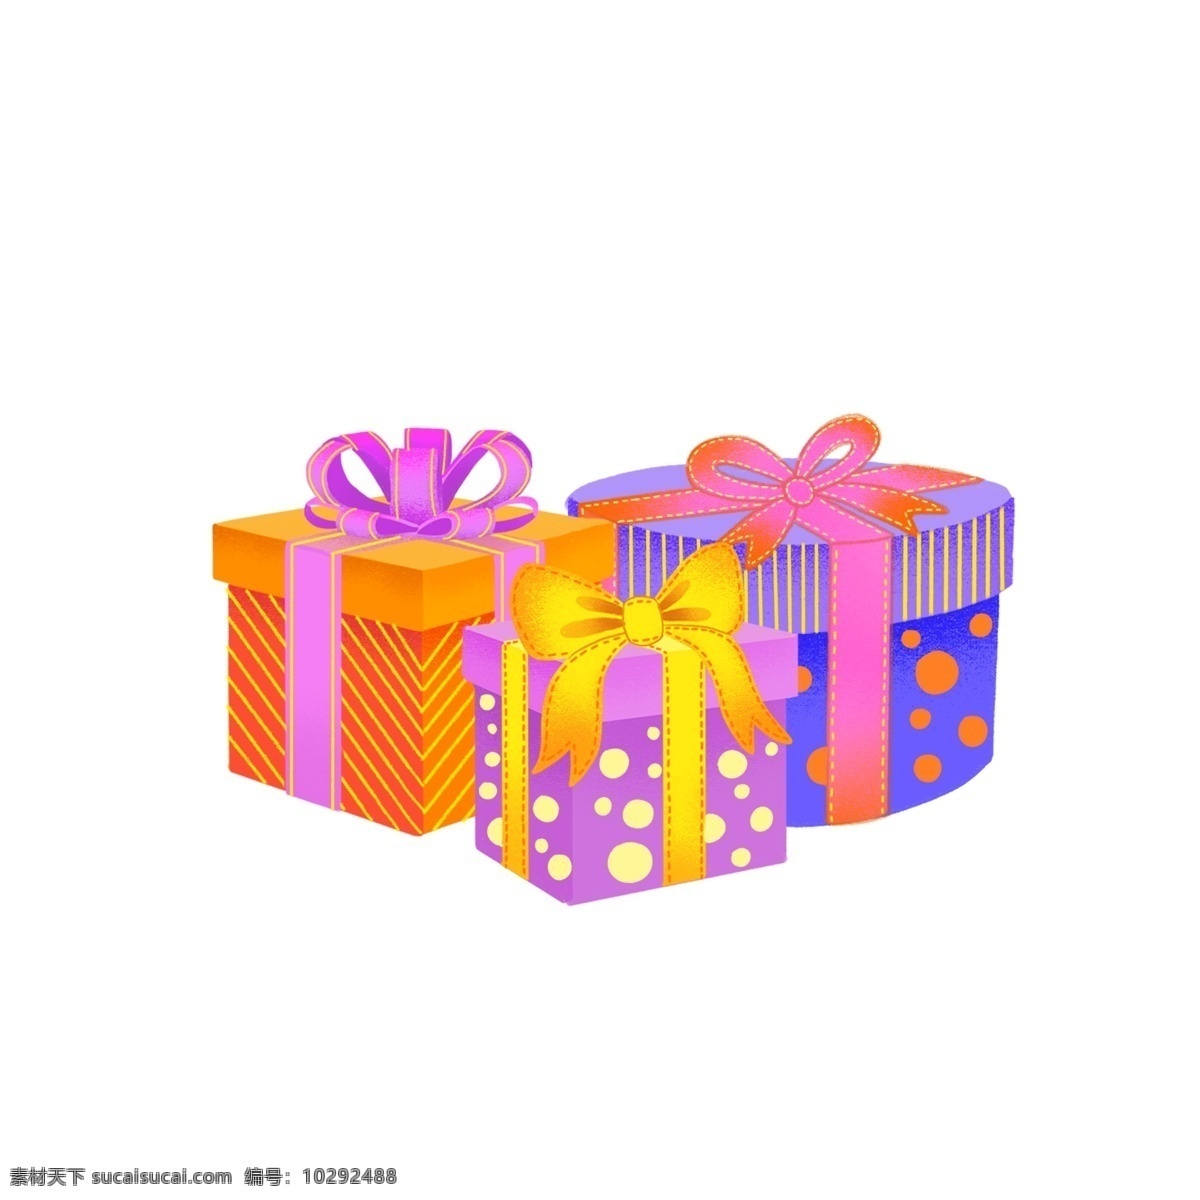 手绘 平安夜 圣诞节 礼物 盒 精品 元素 蝴蝶结 可爱 小清新 装饰 礼物盒 可商用 卡通 彩色